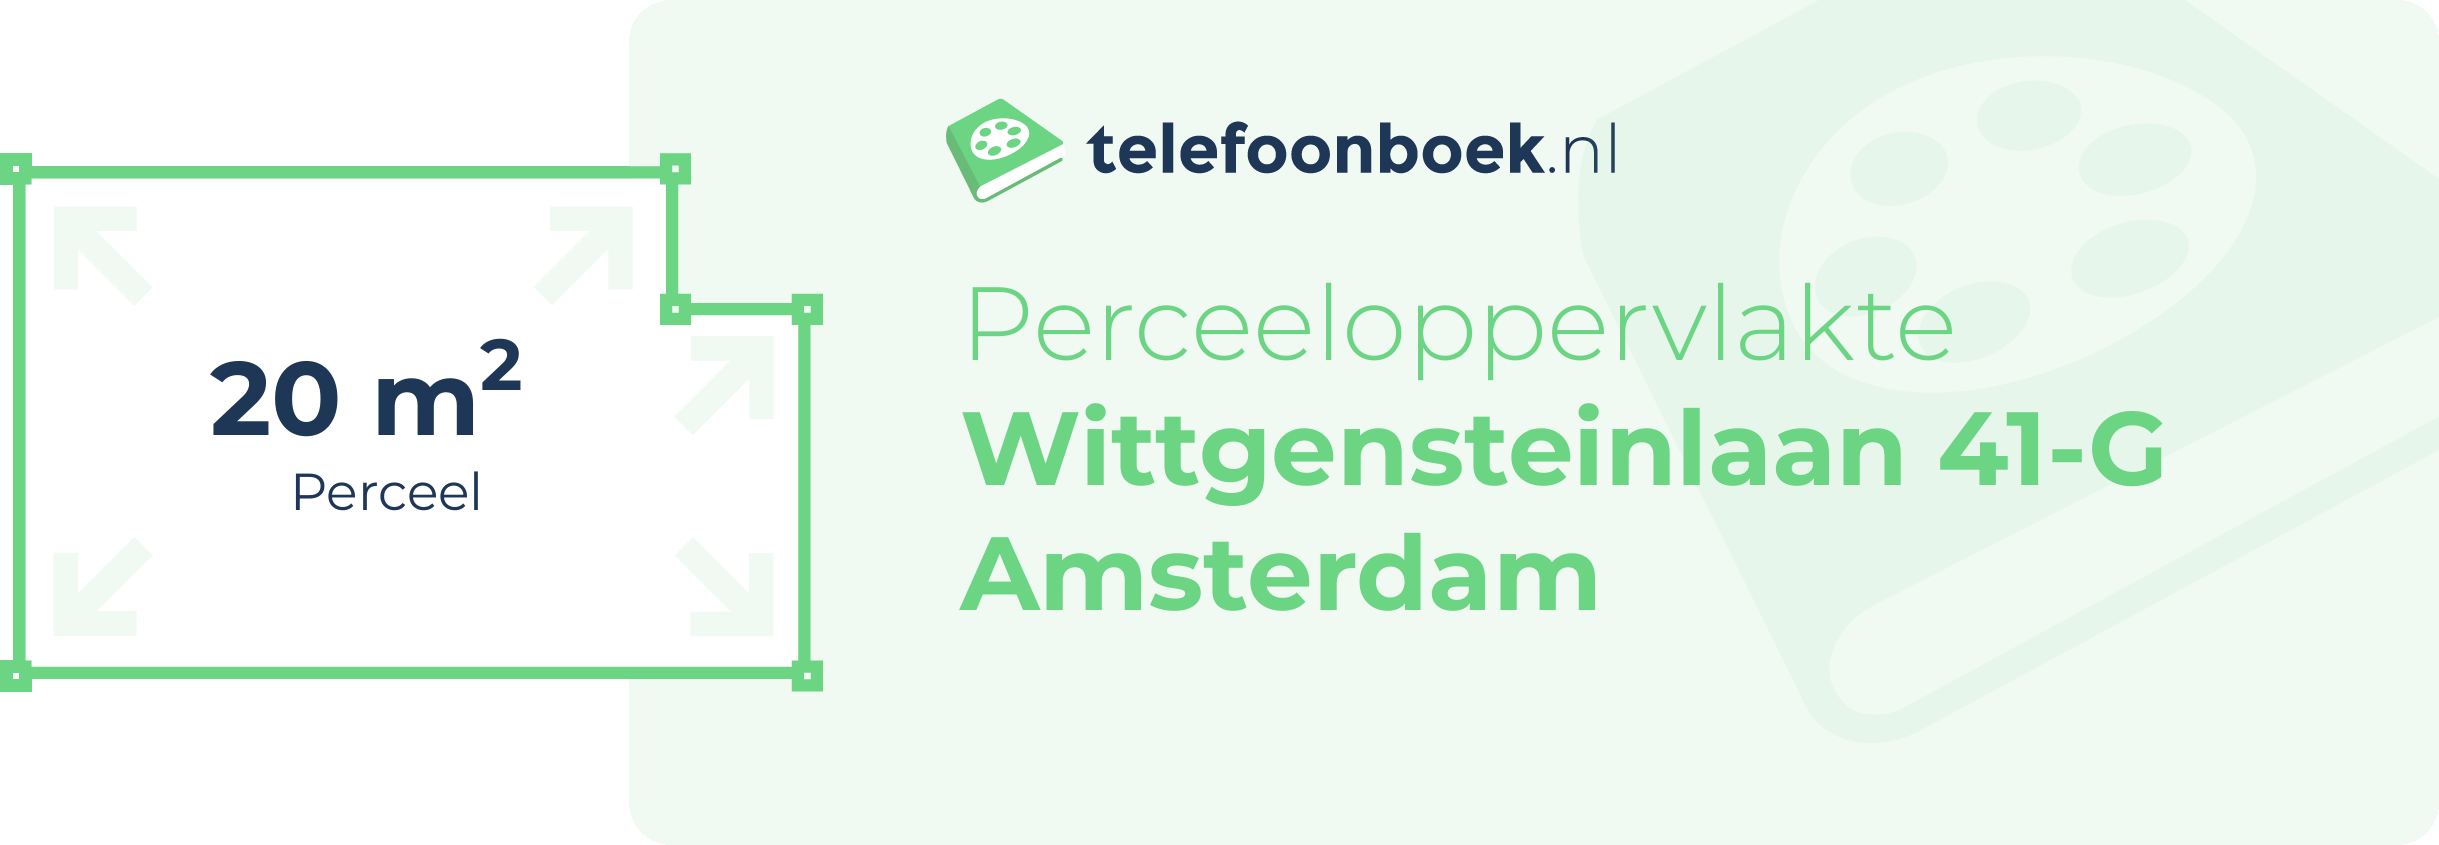 Perceeloppervlakte Wittgensteinlaan 41-G Amsterdam